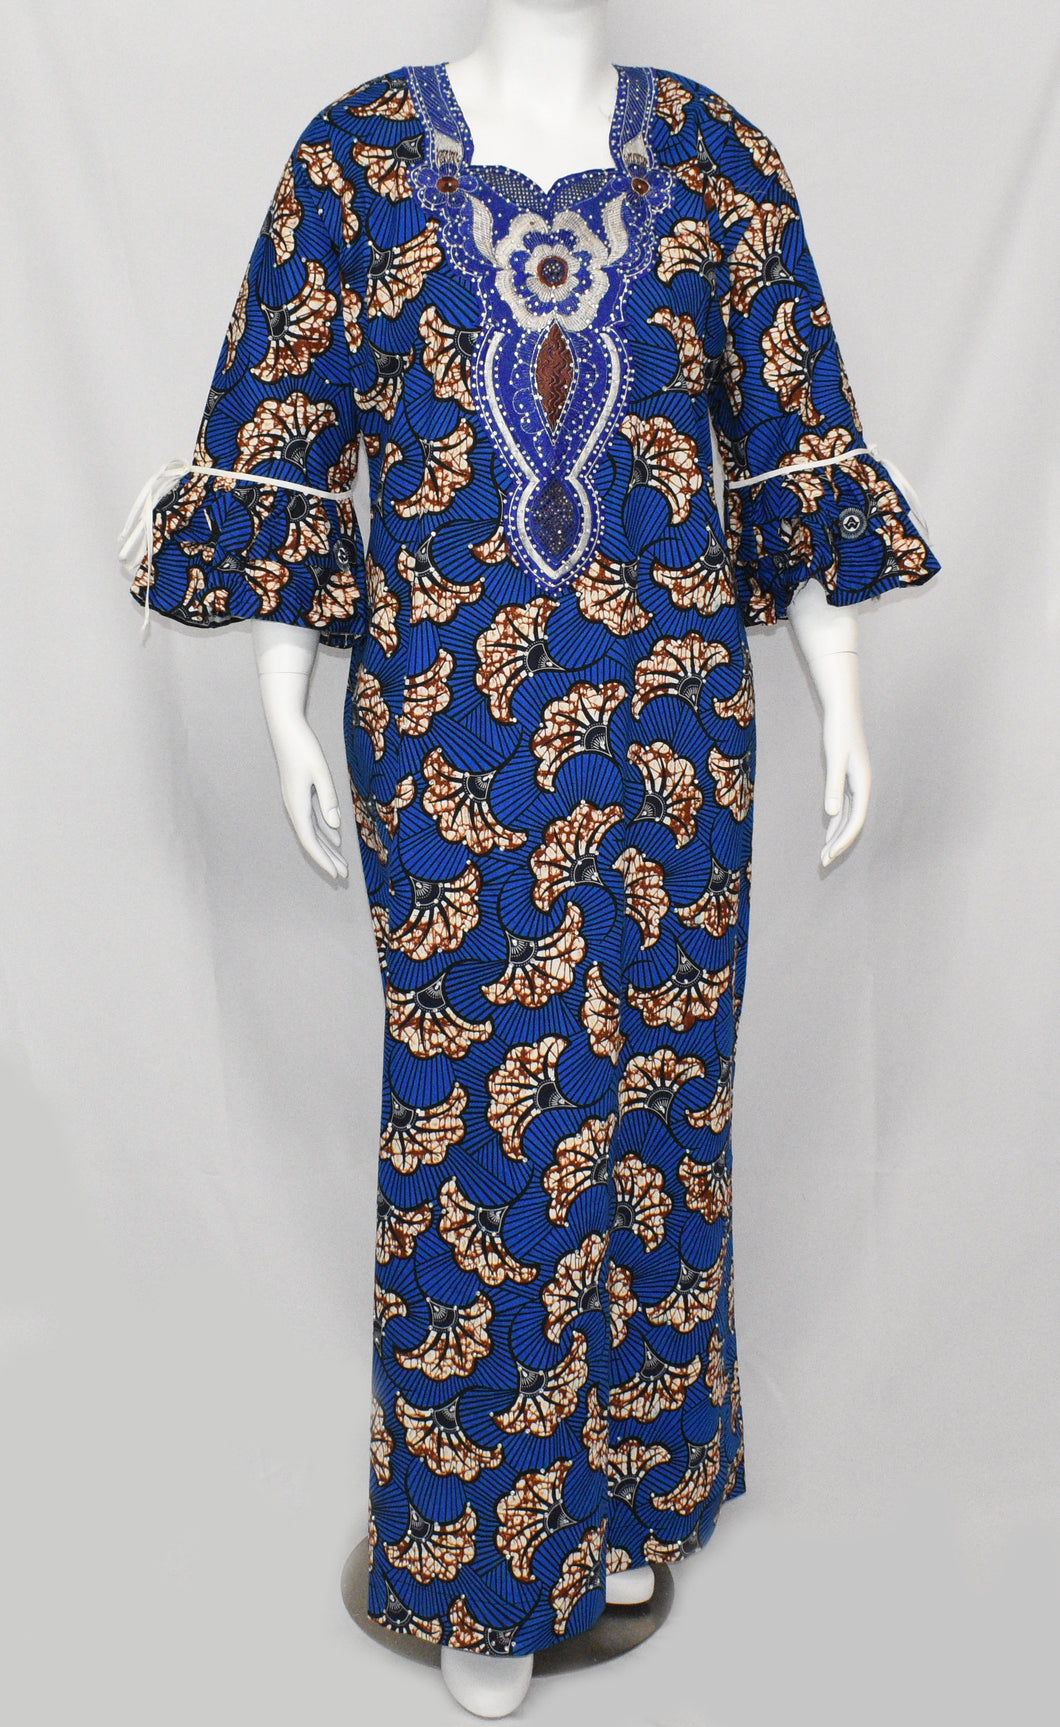 Women's Royal Blue Long Sleeve Flowy Dress